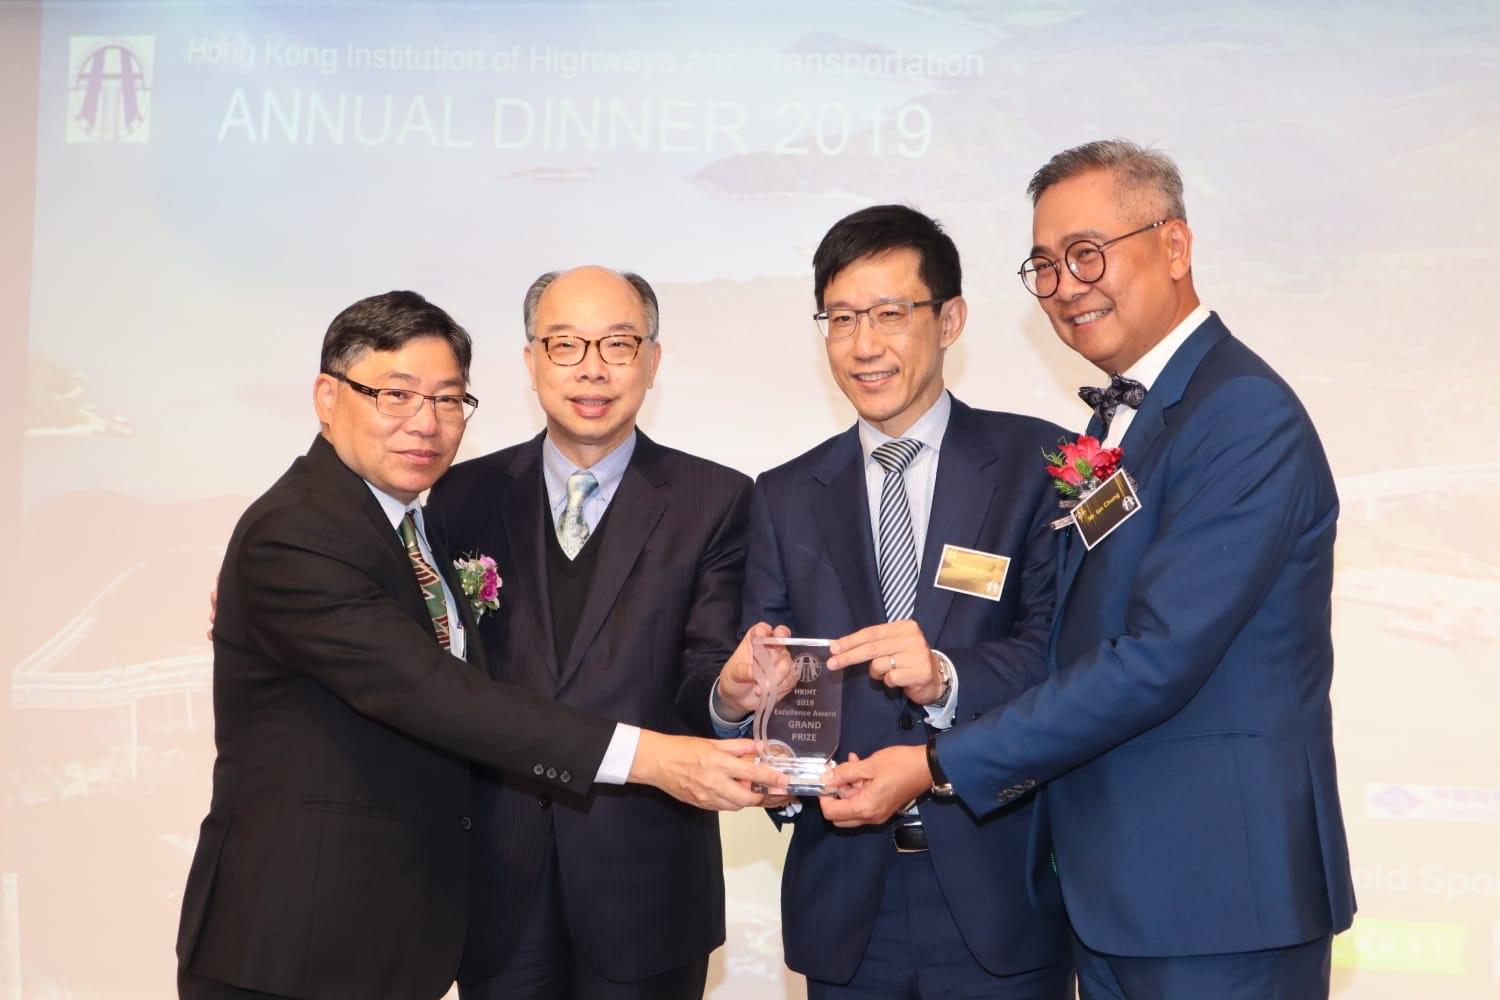 港珠澳大橋香港段工程項目(包括香港連接路及香港口岸)獲頒香港公路學會2019年度公路和交通卓越獎。